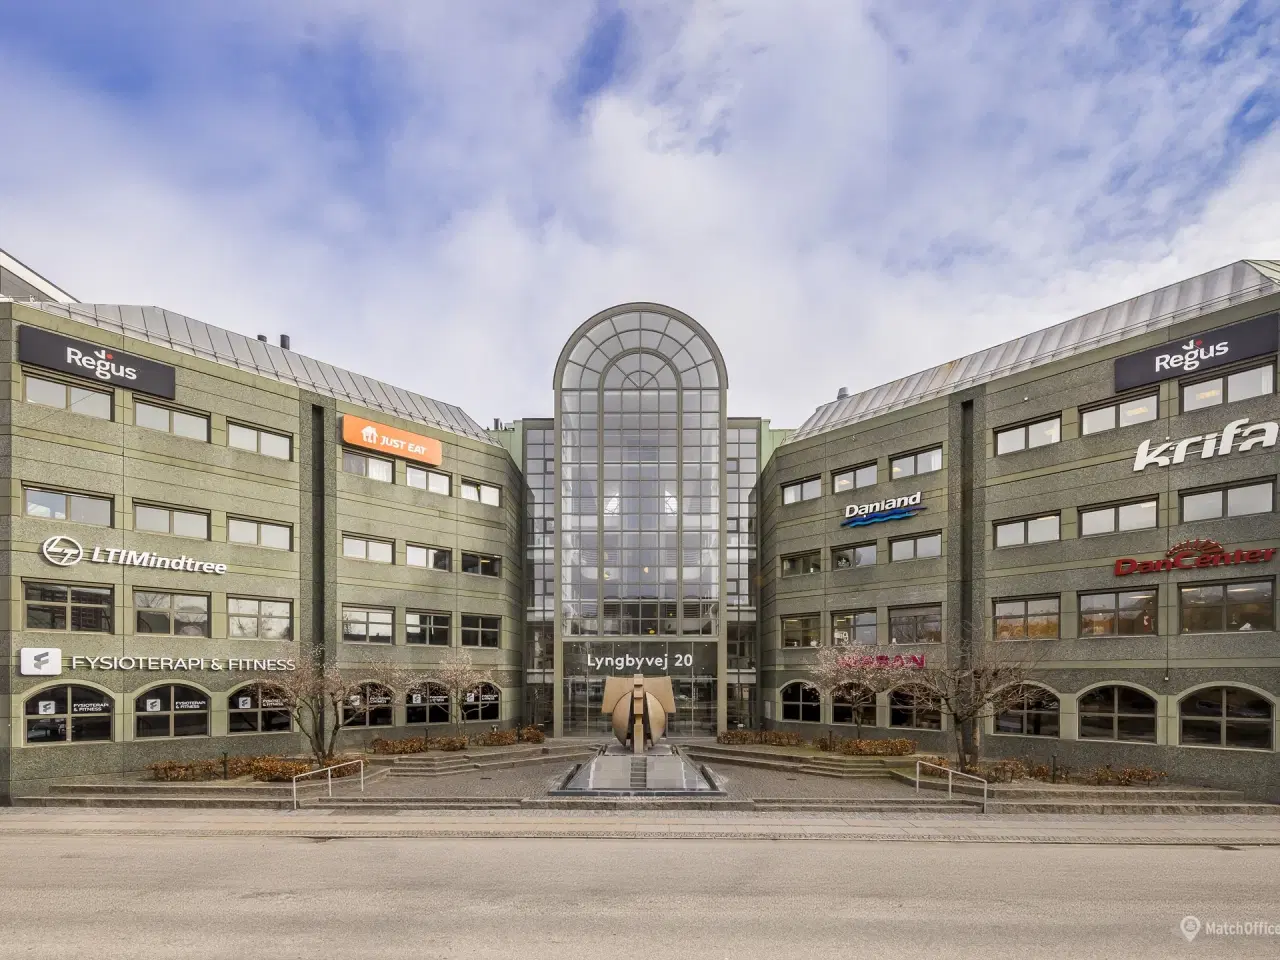 Billede 5 - Moderne kontorer på Østerbro få minutter fra Vibenshus Metro